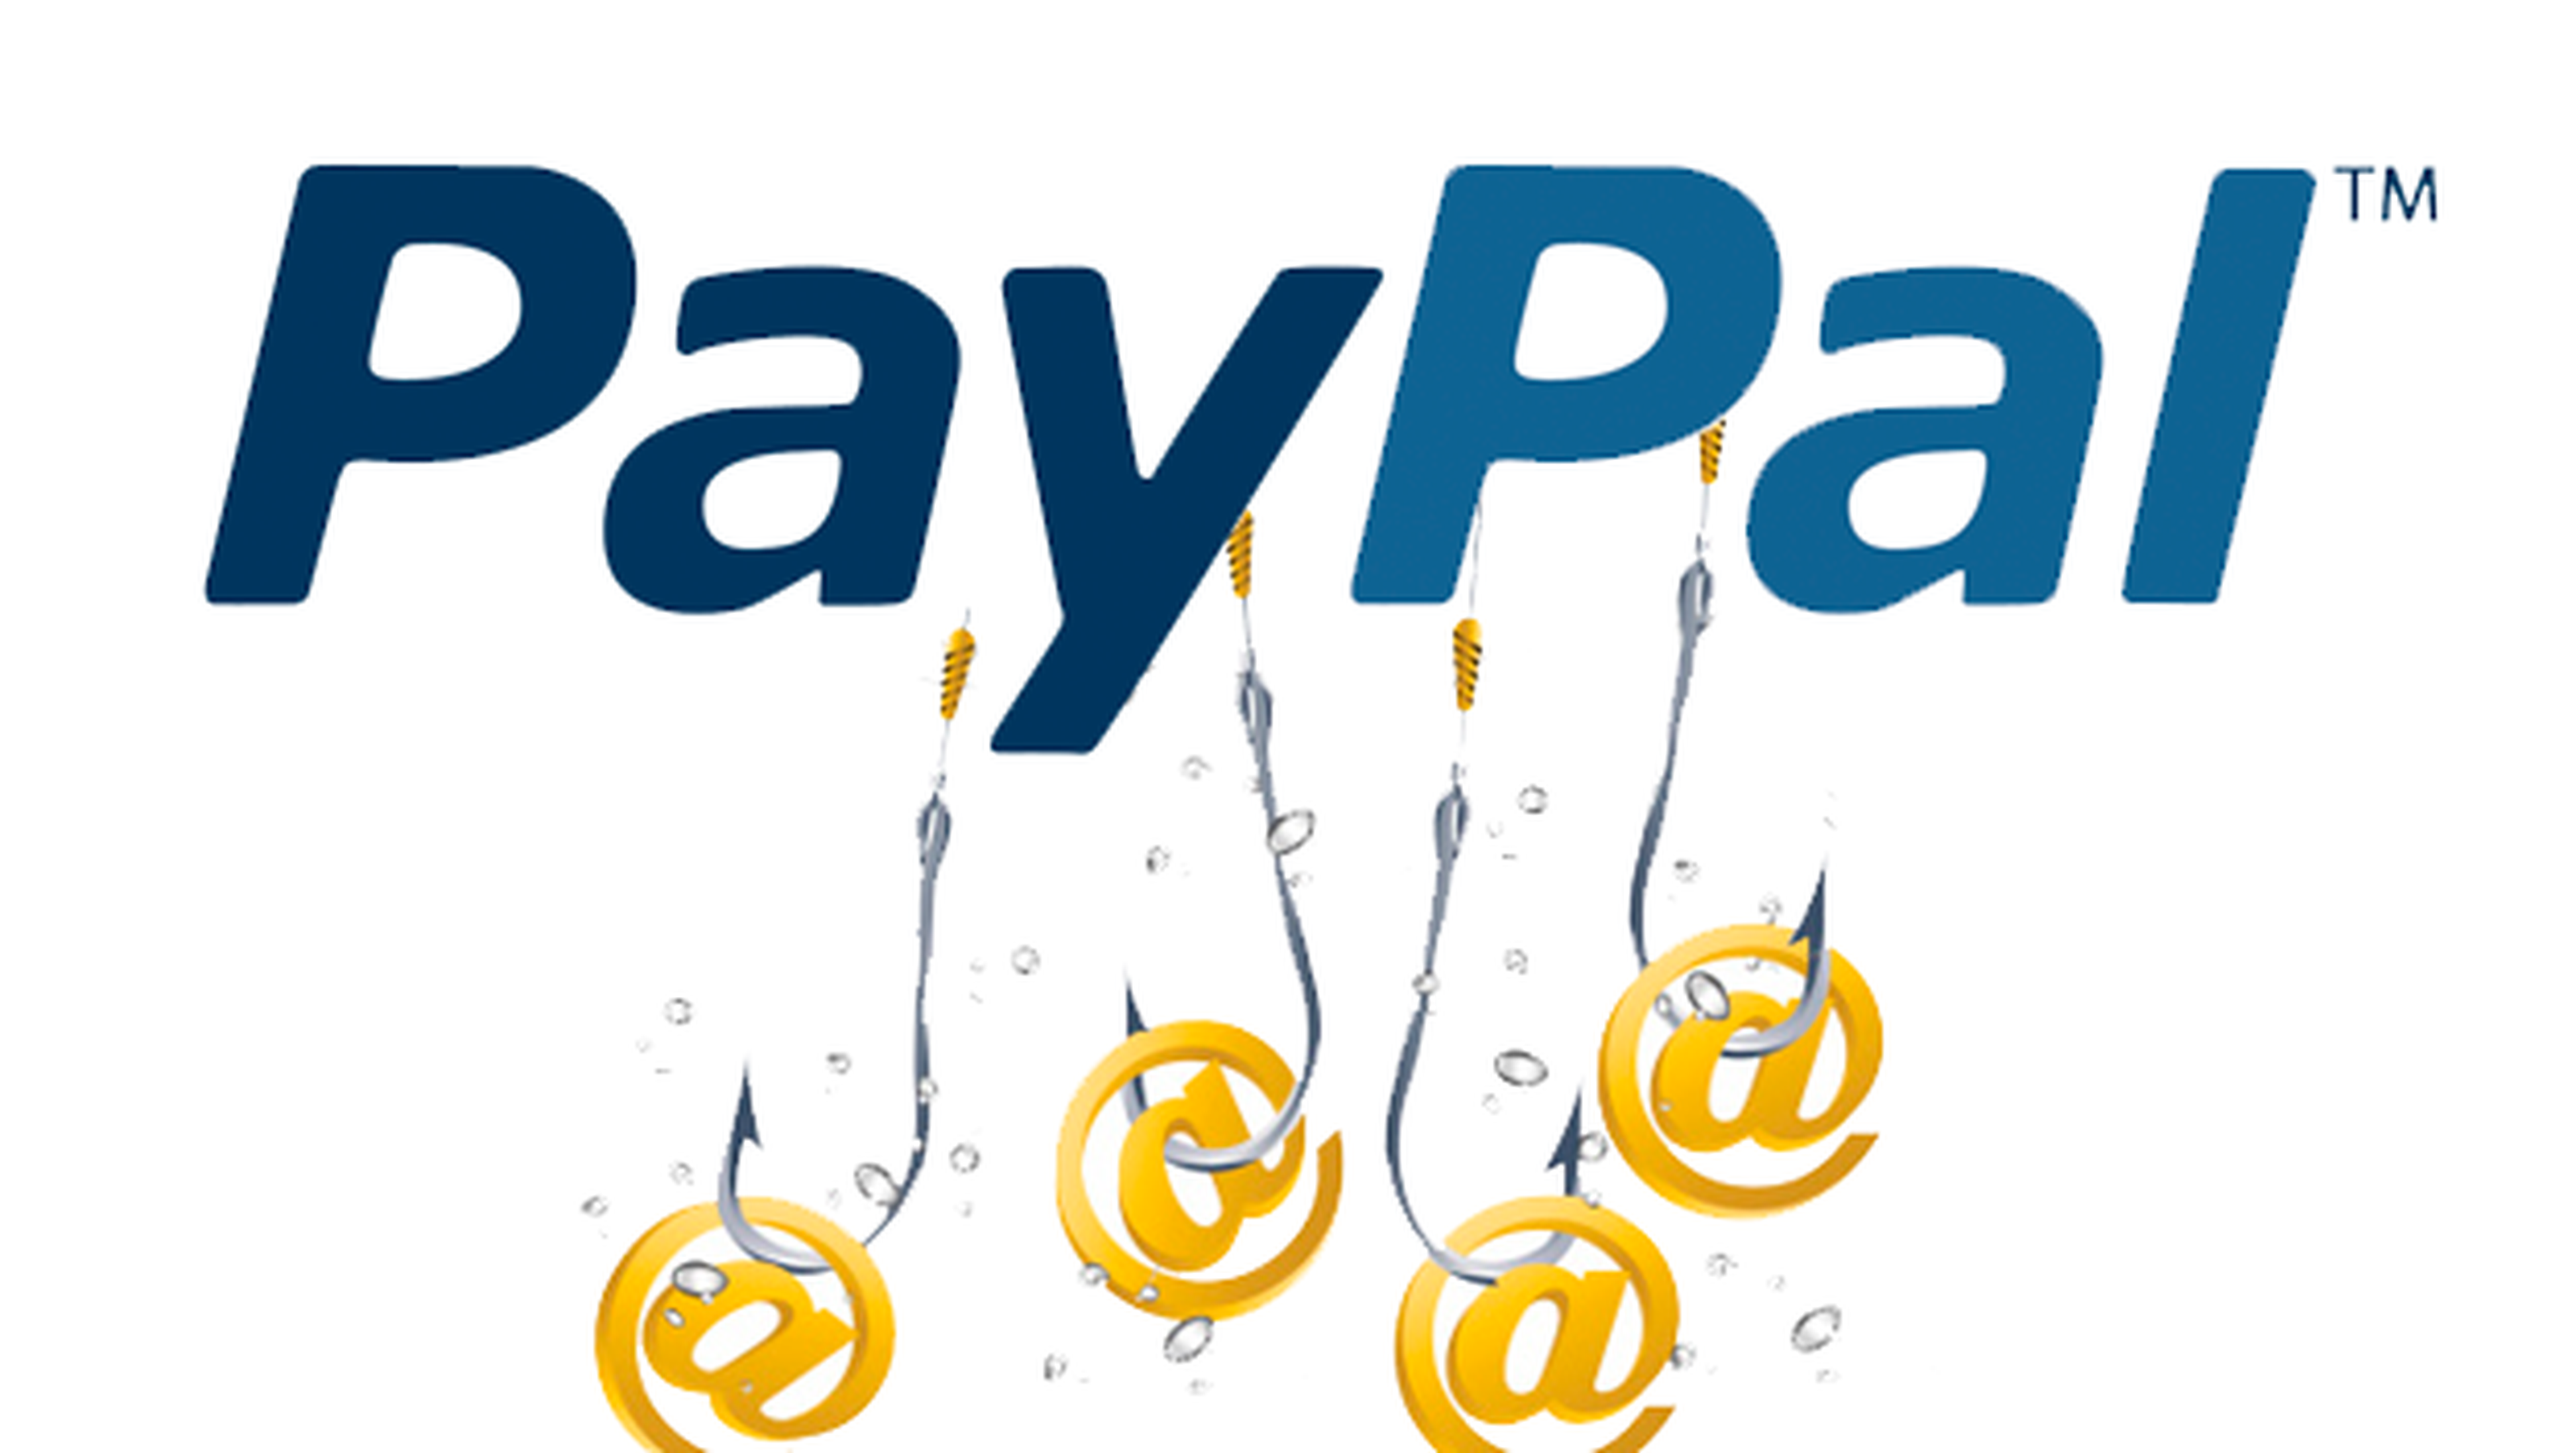 Una web finge ser Paypal para robar contraseñas a los usuarios